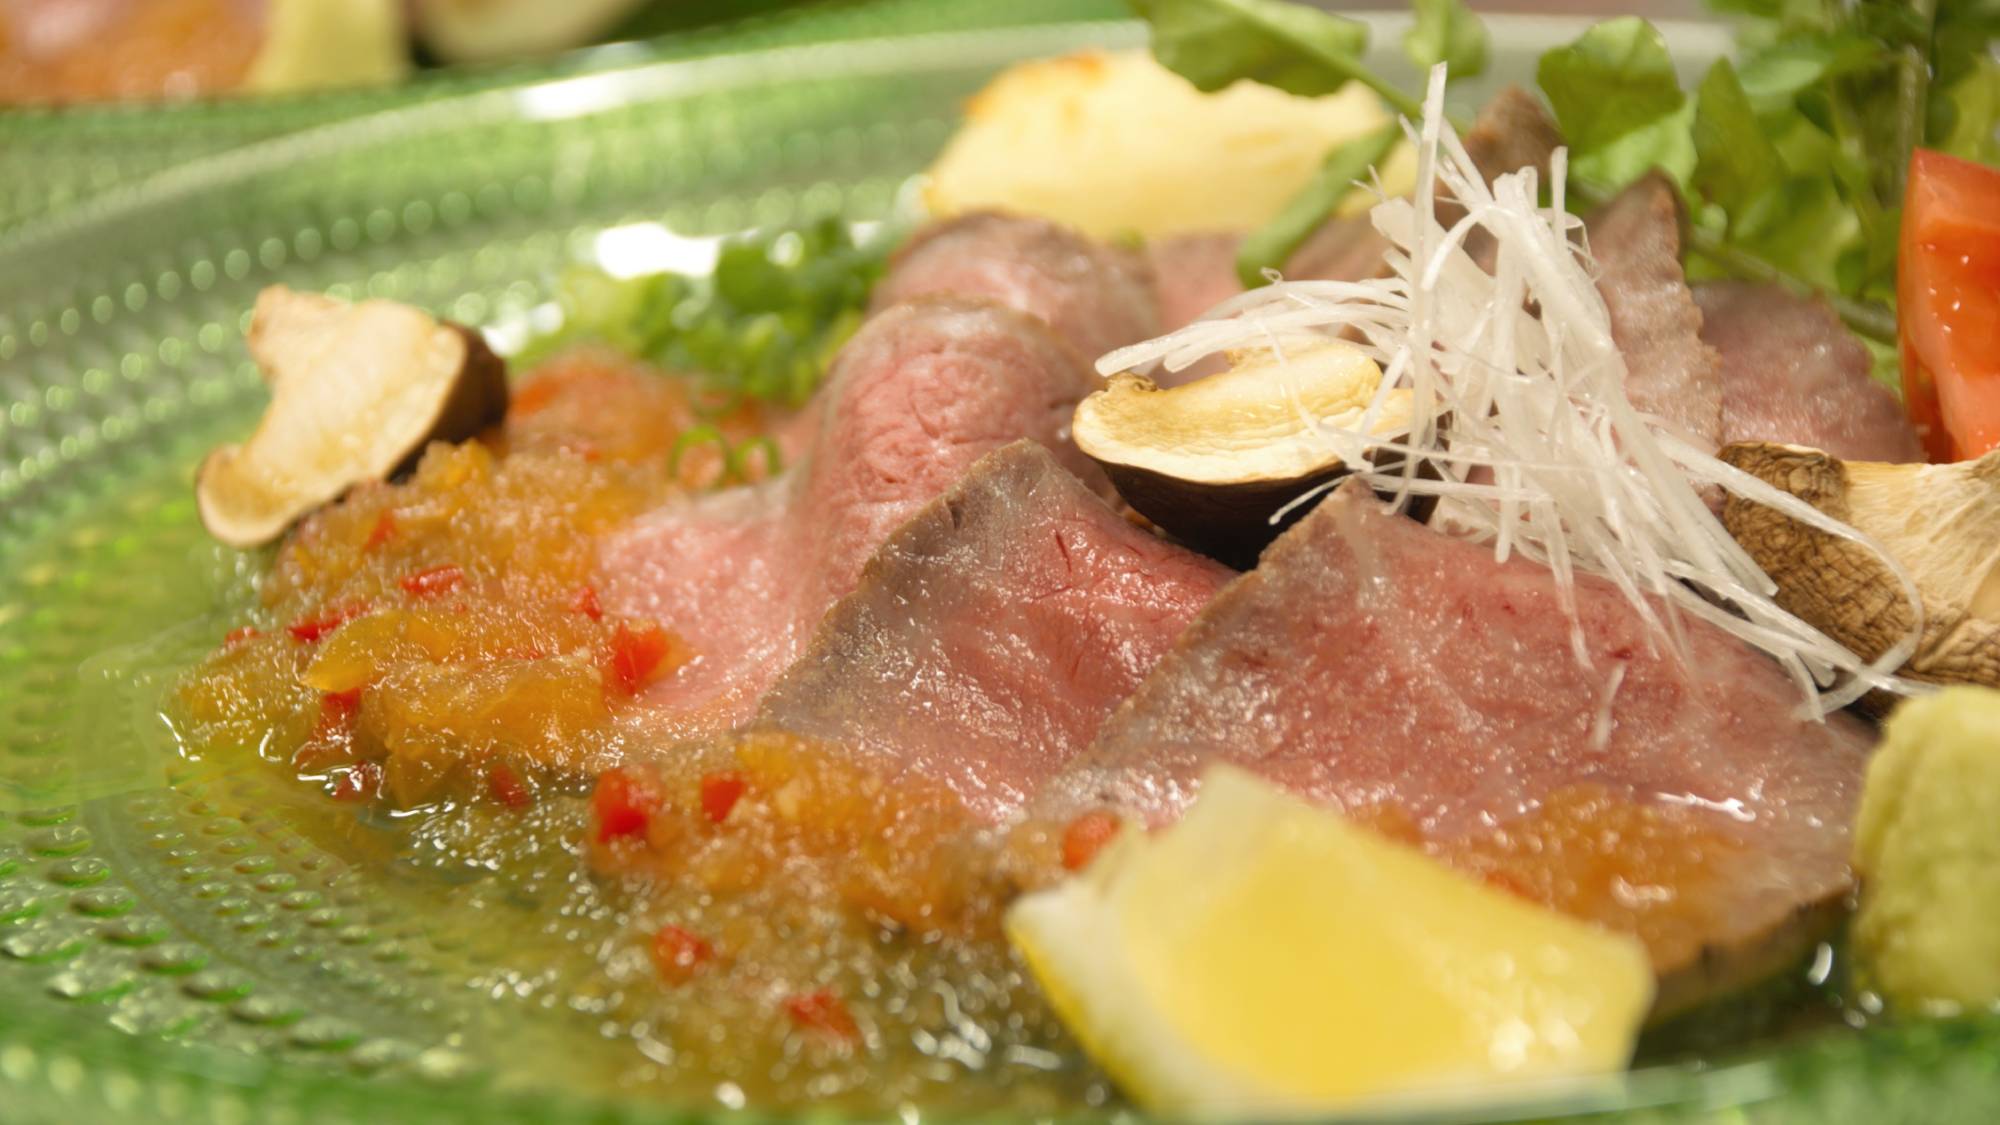 【ローストビーフ】お肉選びからこだわった静岡産和牛のローストビーフを自家製オリジナルソースで愉しむ。